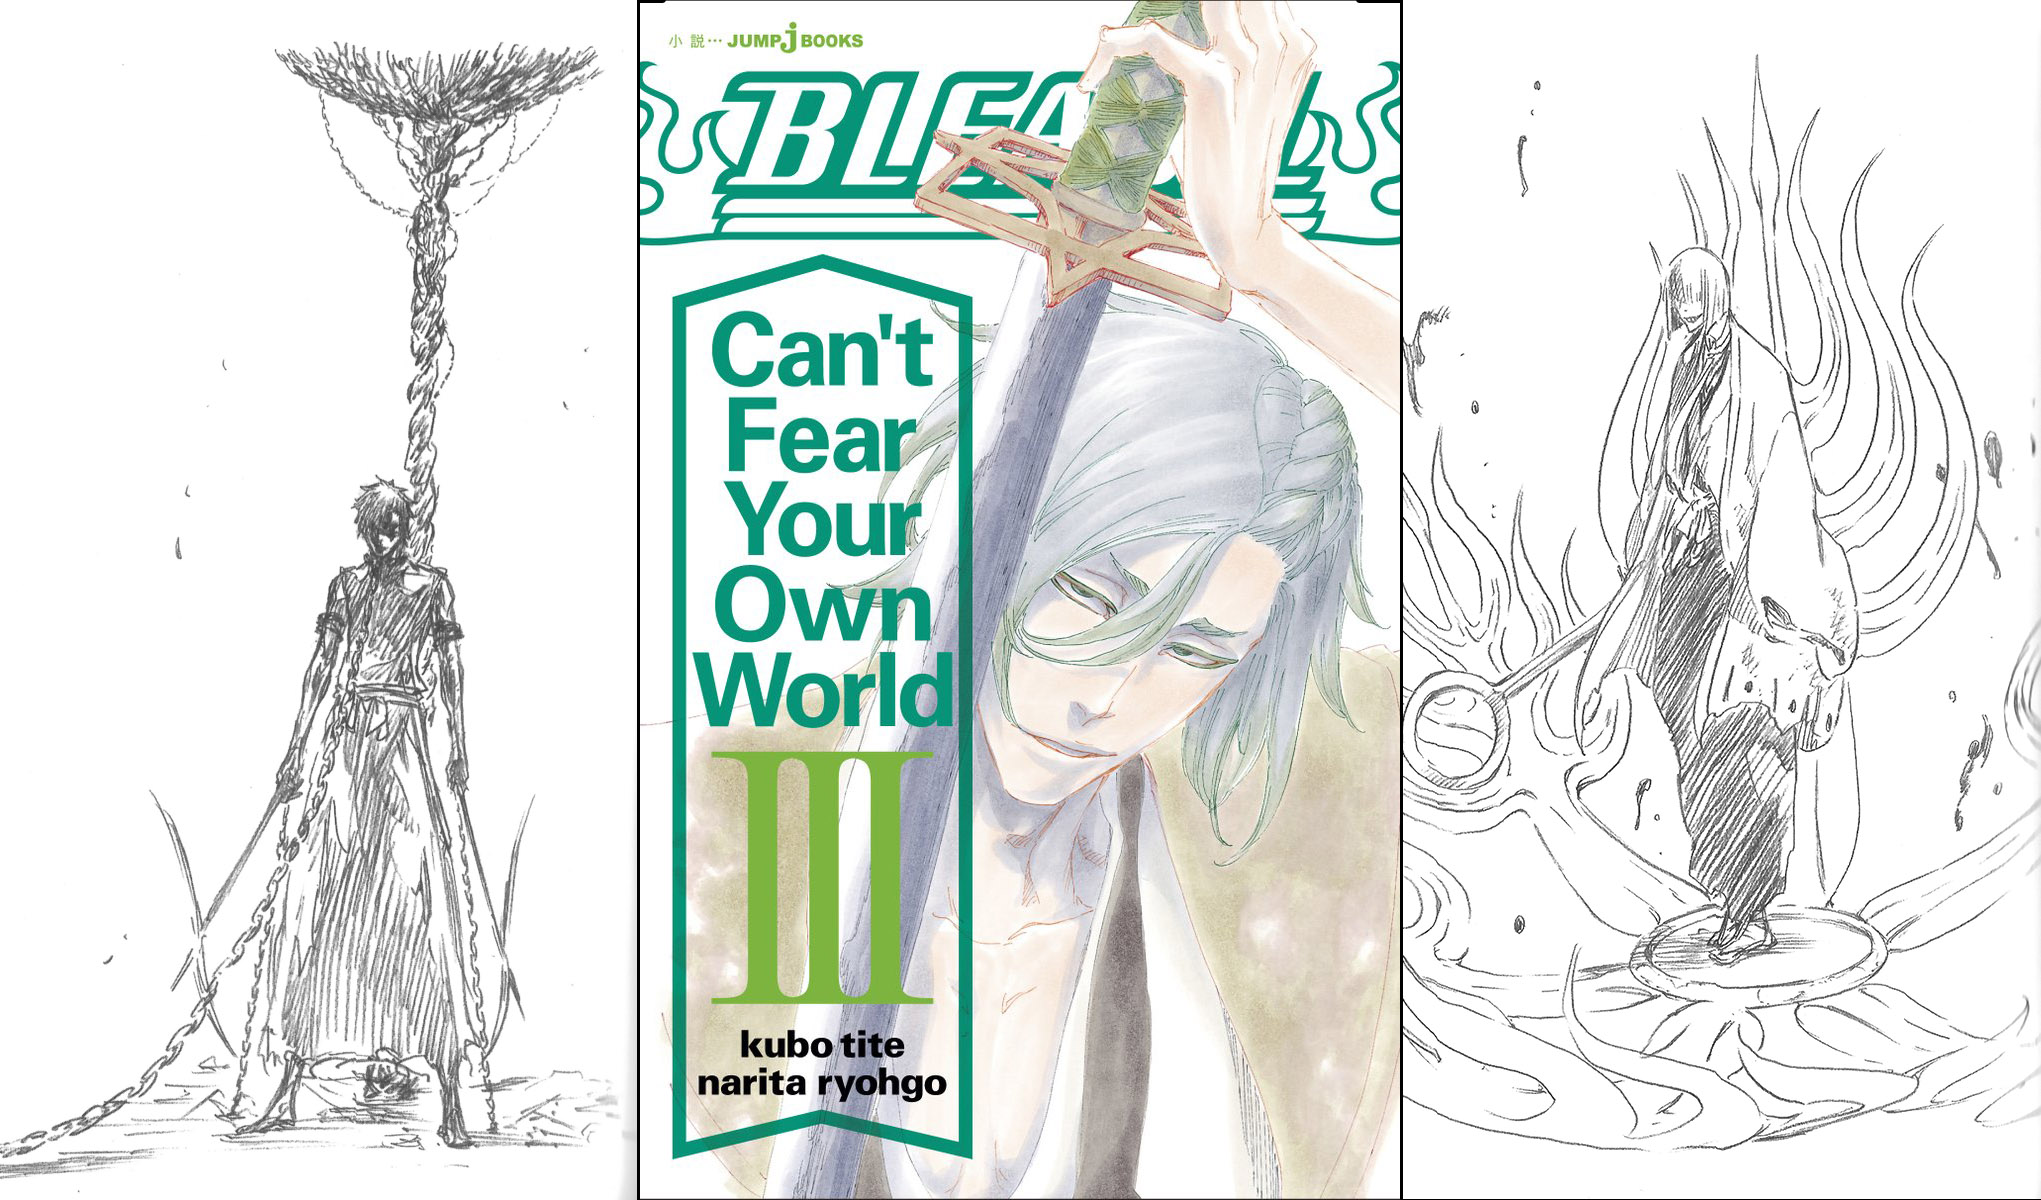 Bleach Can T Fear Your Own World Le Volume 3 Dans Les Meilleures Ventes De La Semaine Et Les 3 Volumes Sont En Reimpression